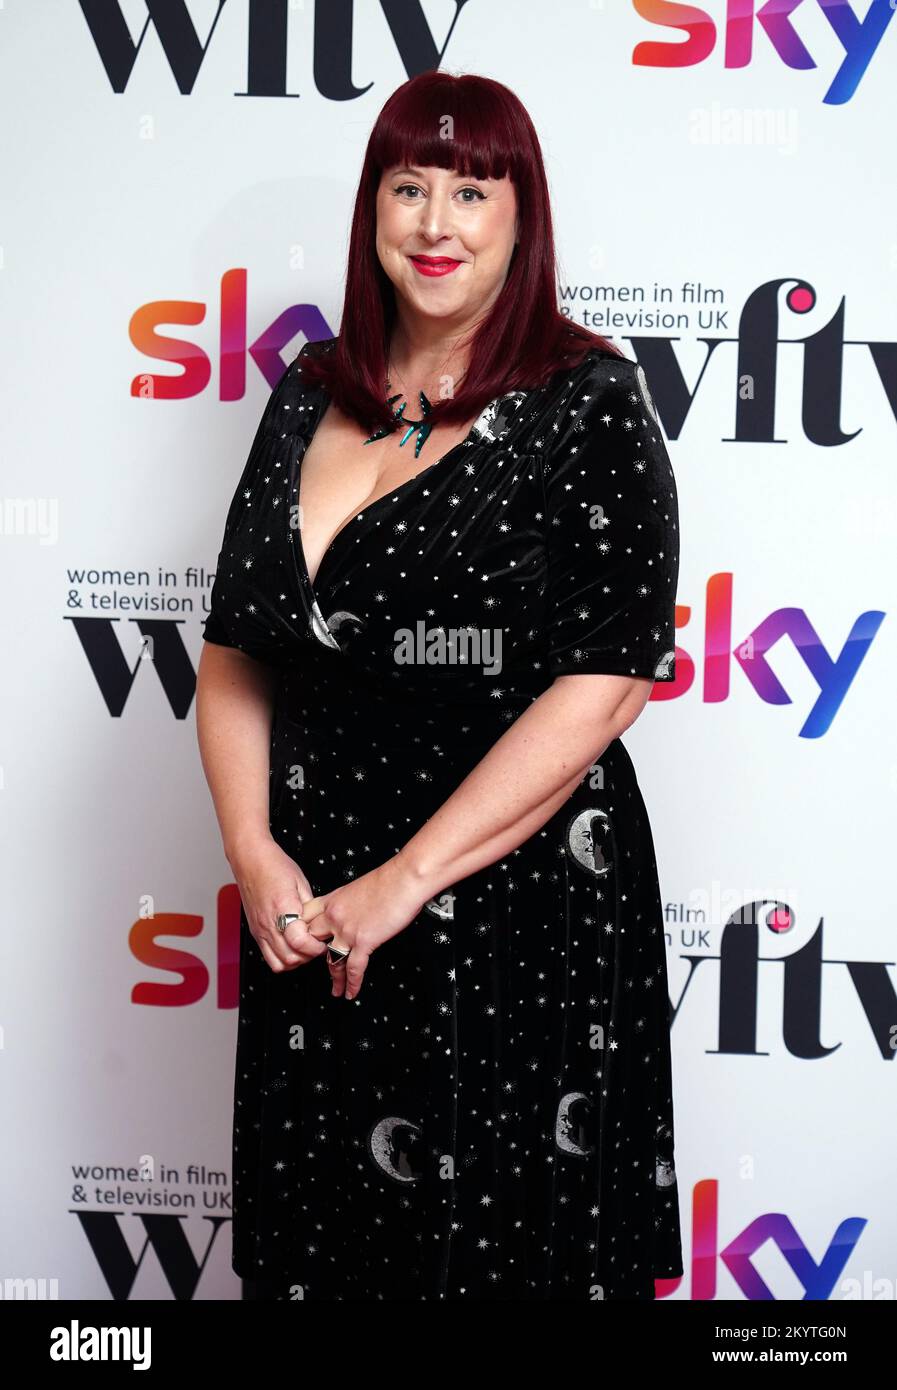 Nicola Daley partecipa ai Women in Film and TV Awards al London Hilton Park Lane, nel centro di Londra. Data immagine: Venerdì 2 dicembre 2022. Foto Stock